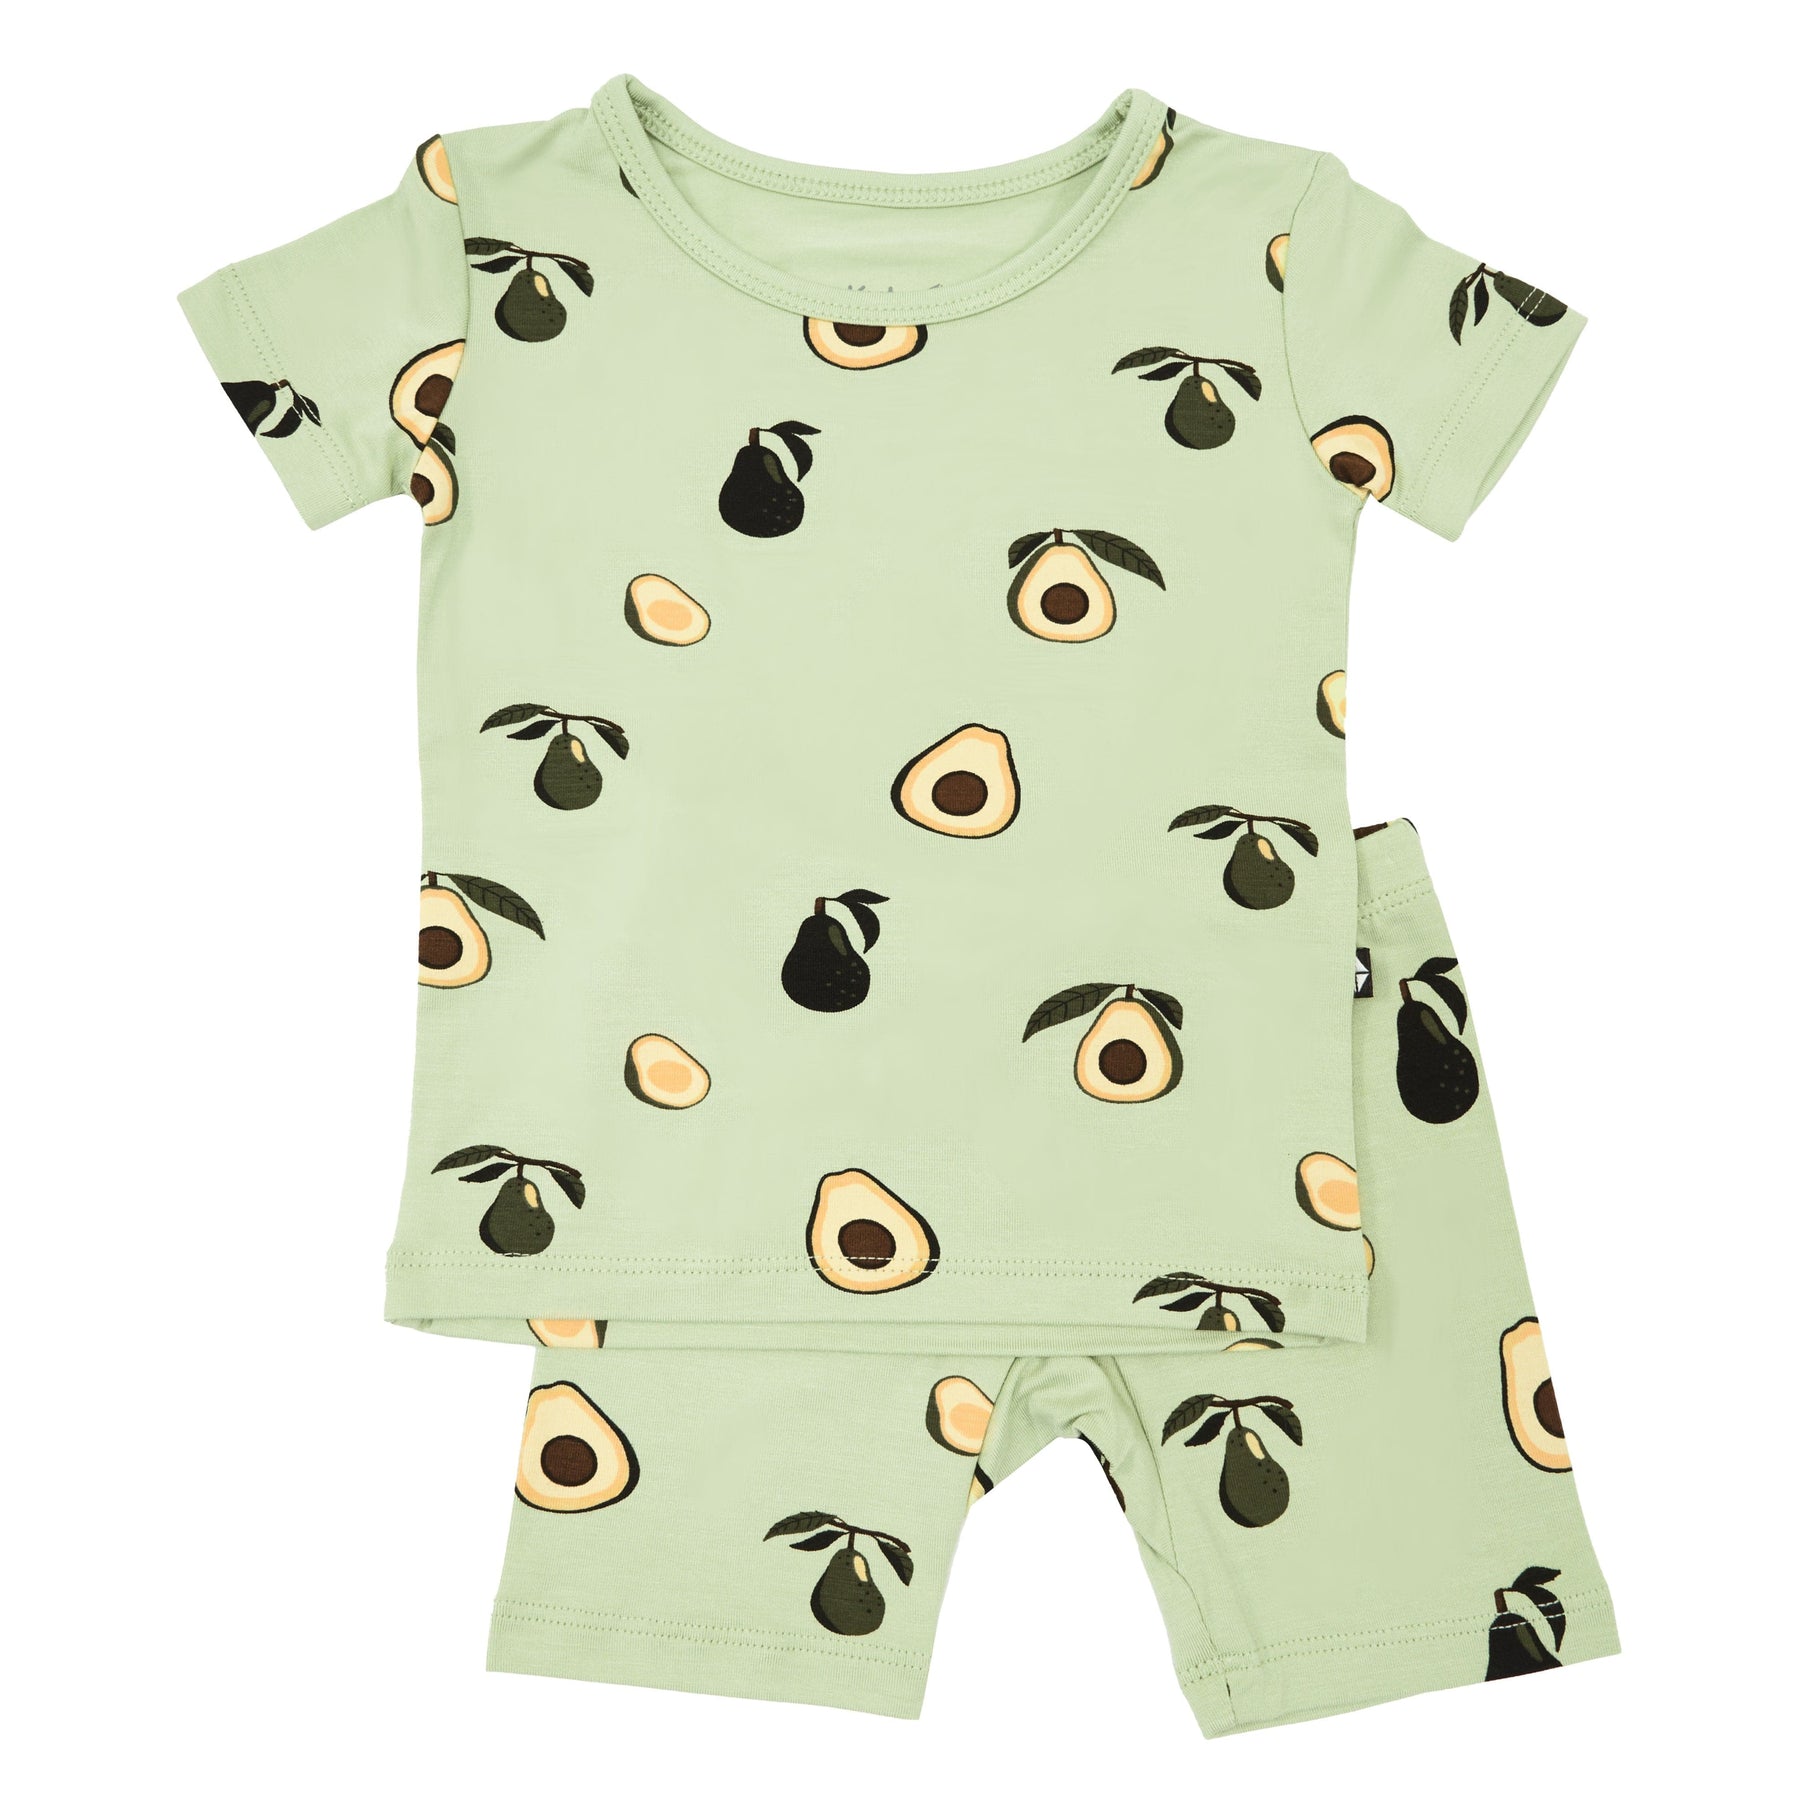 Kyte Baby Short Sleeve Toddler Pajama Set Short Sleeve Pajamas in Avocado